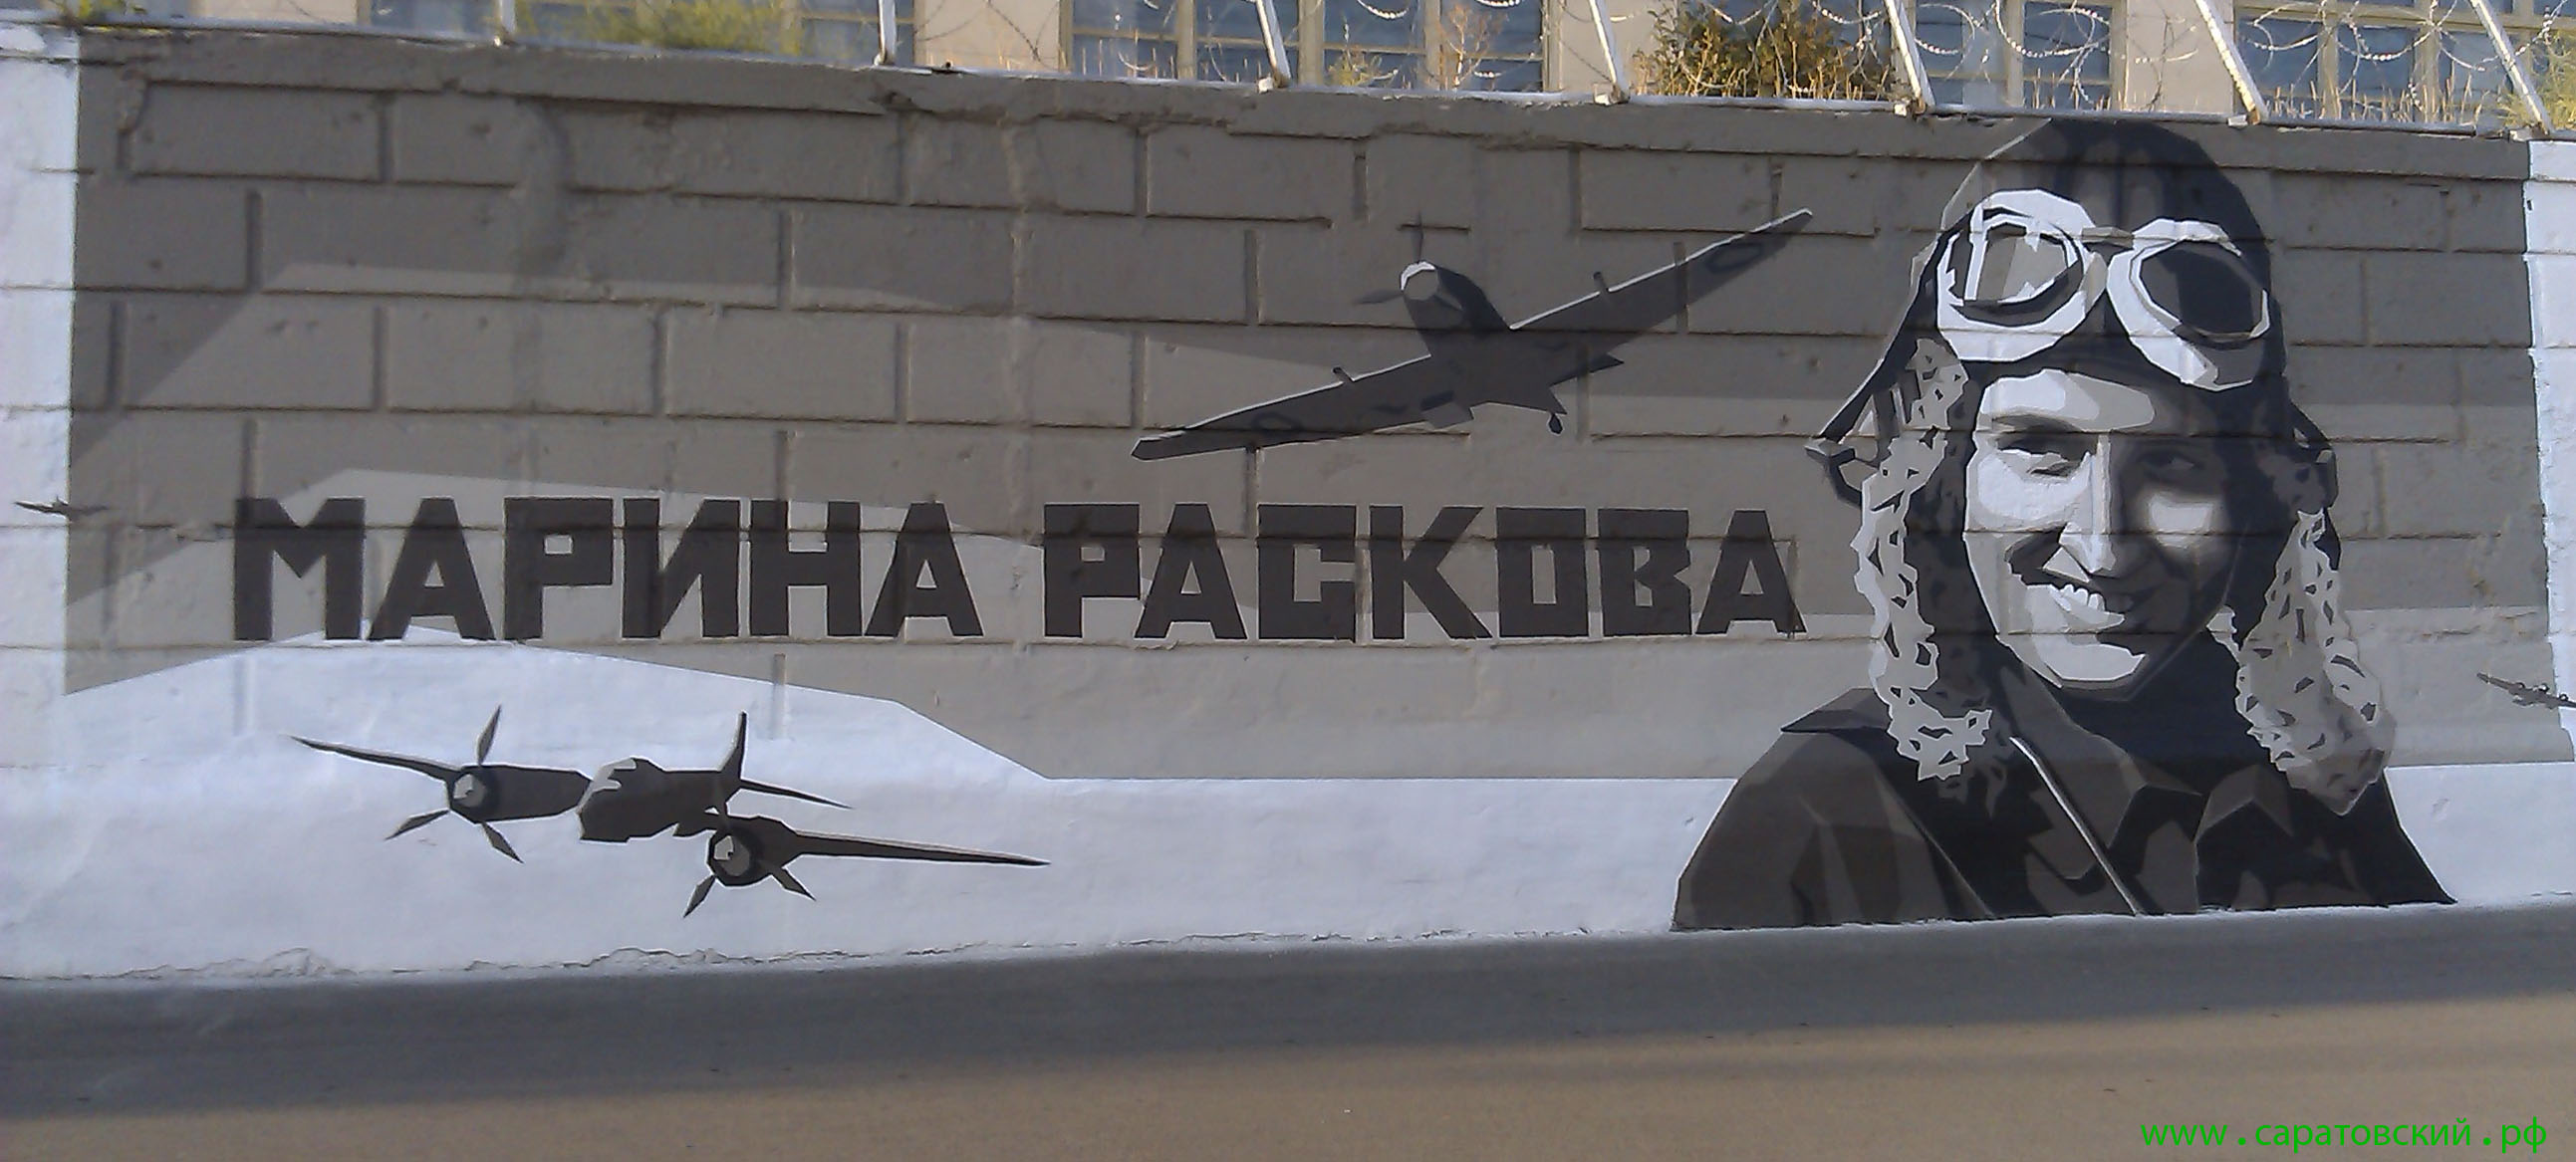 Saratov embankment graffiti: Marina Raskova and Saratov, Russia